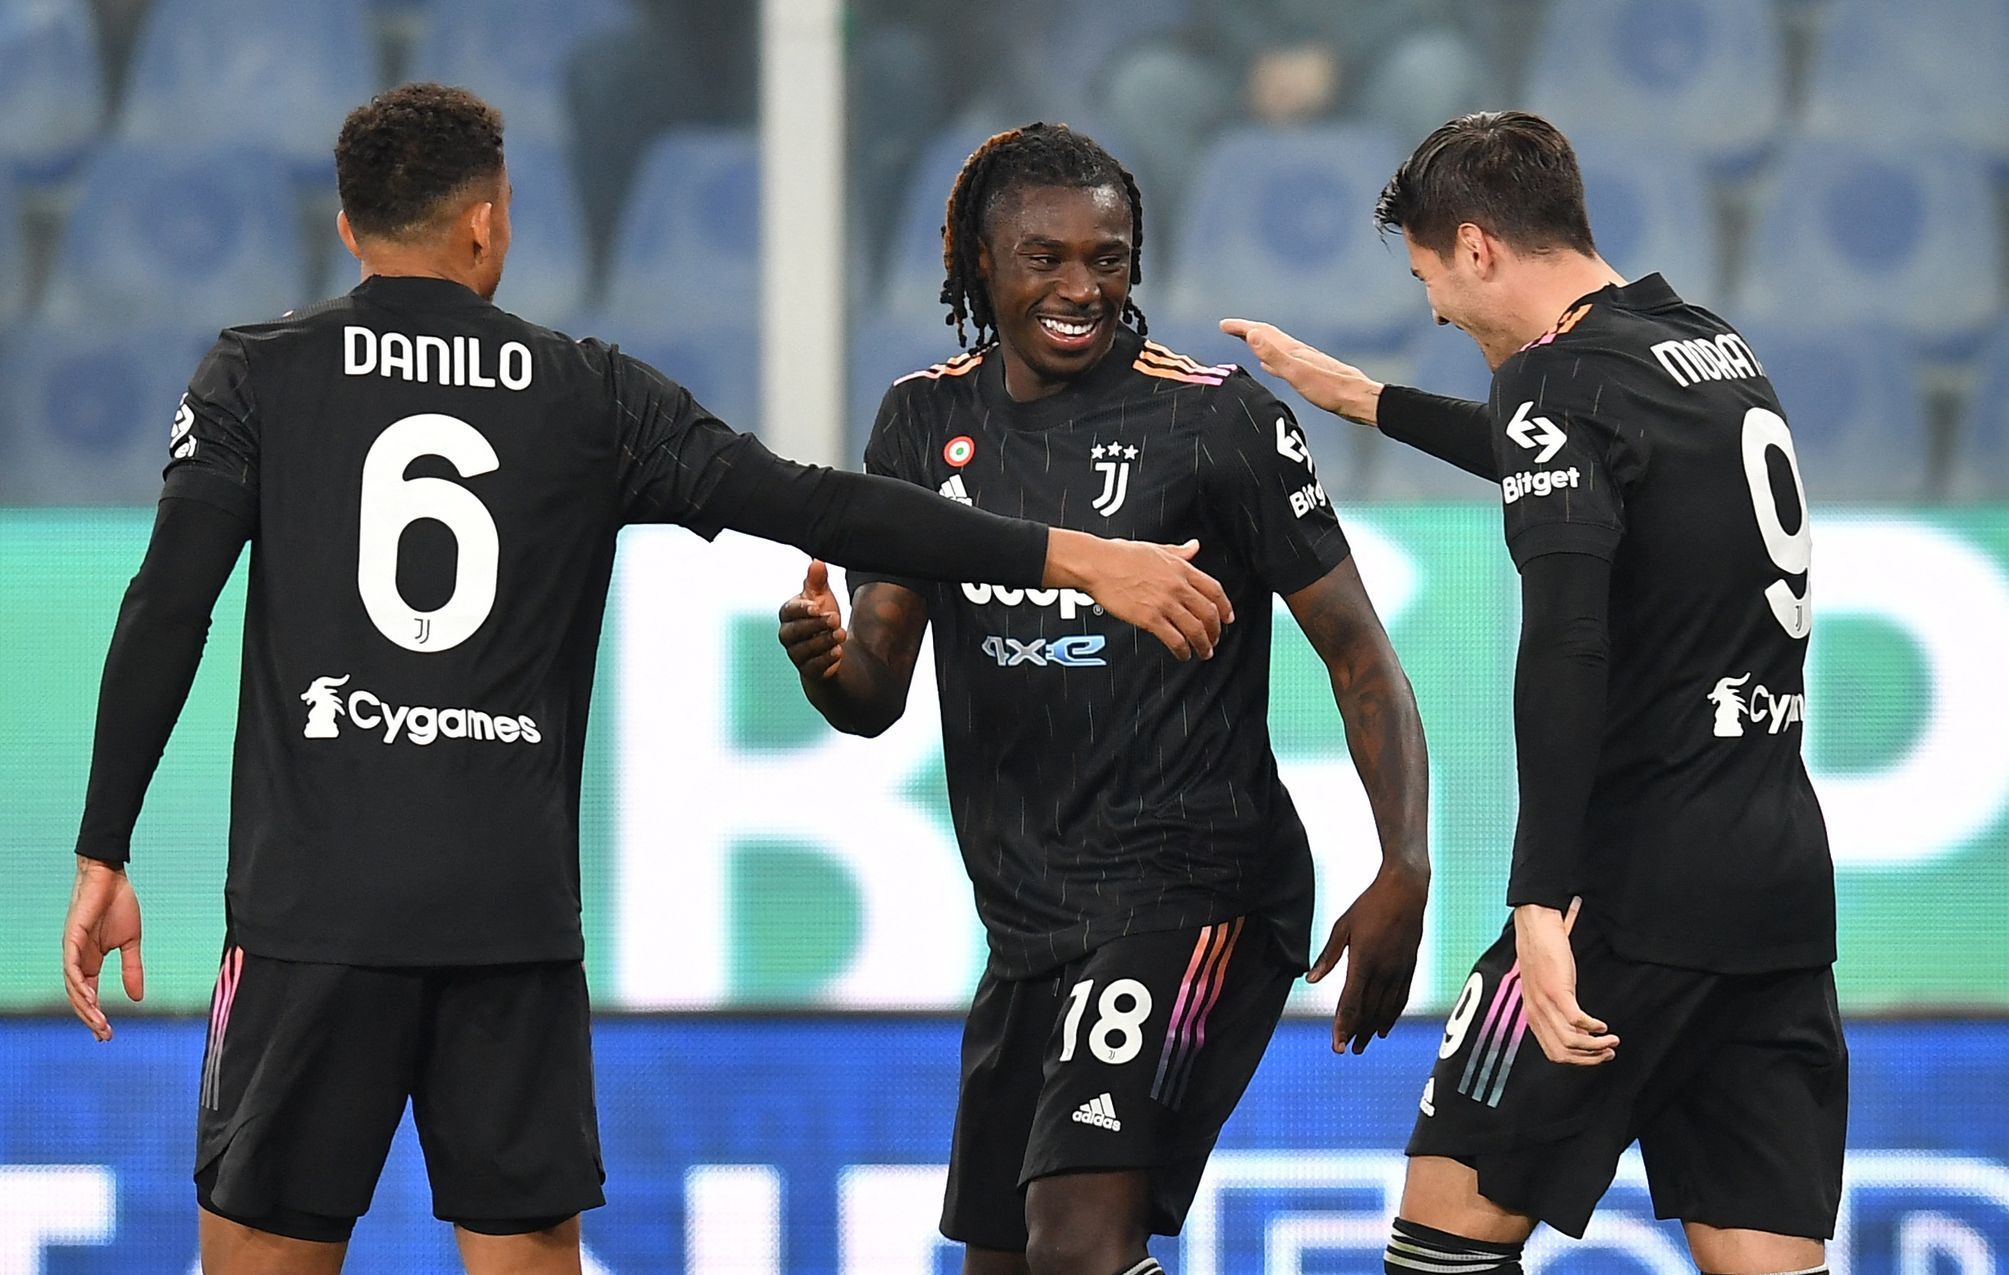 La Juventus non perde per la quindicesima partita consecutiva, l’AC resta in testa alla Serie A.